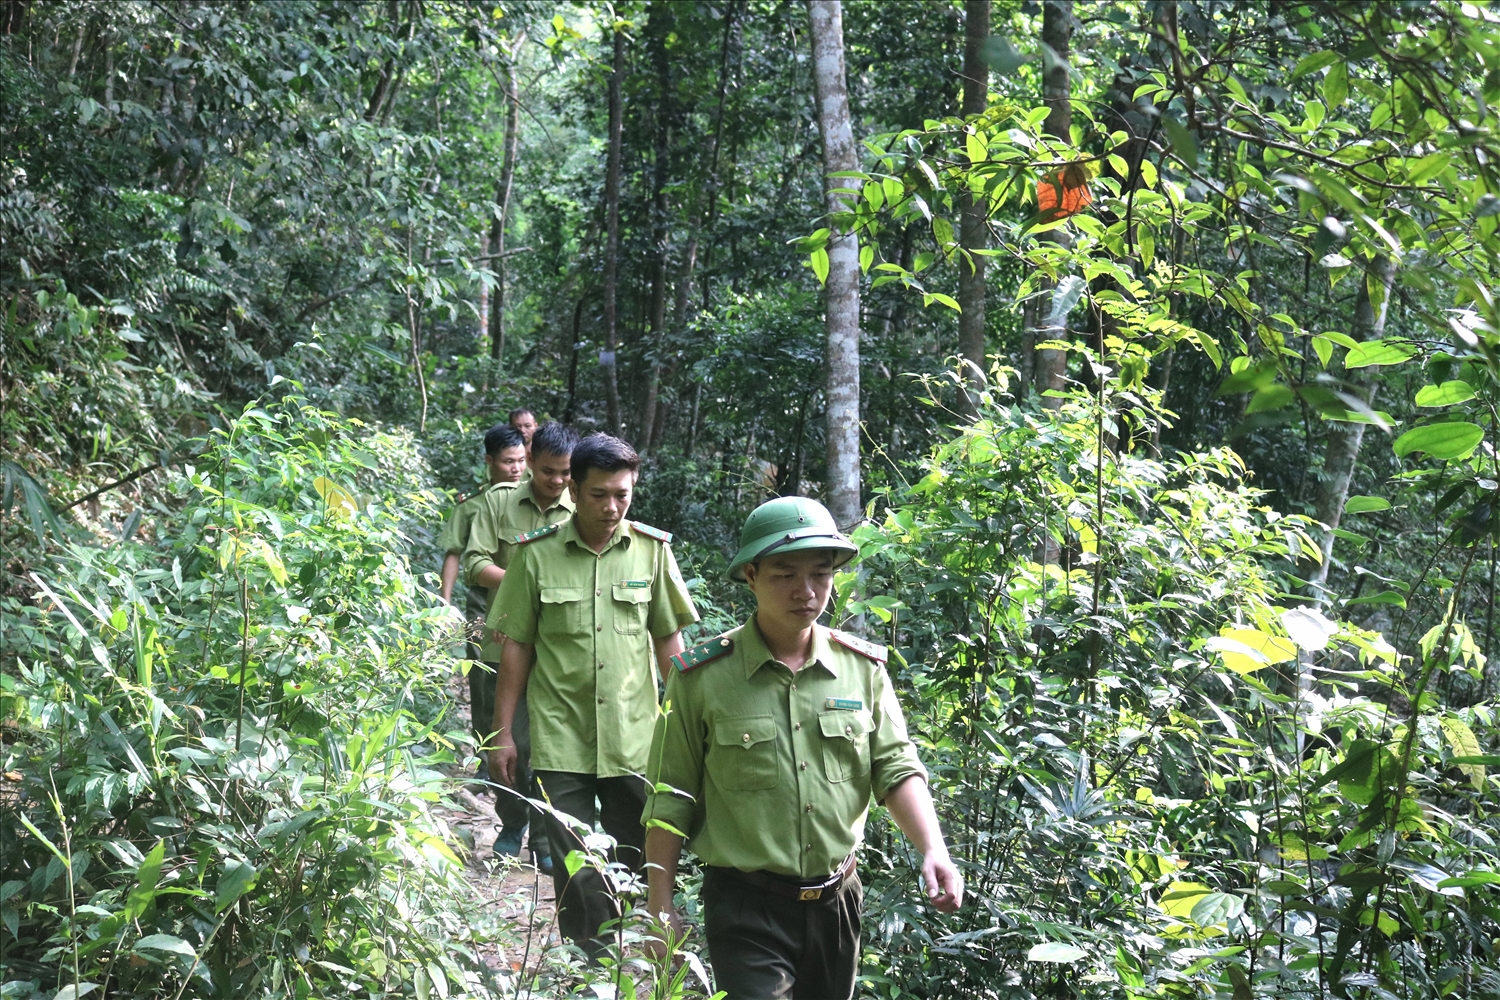 Phó Thủ tướng Lê Văn Thành yêu cầu các Bộ ngành, địa phương tăng cường công tác quản lý bảo vệ rừng, xử lý tình trạng phá rừng, lấn chiếm đất rừng trái pháp luật.